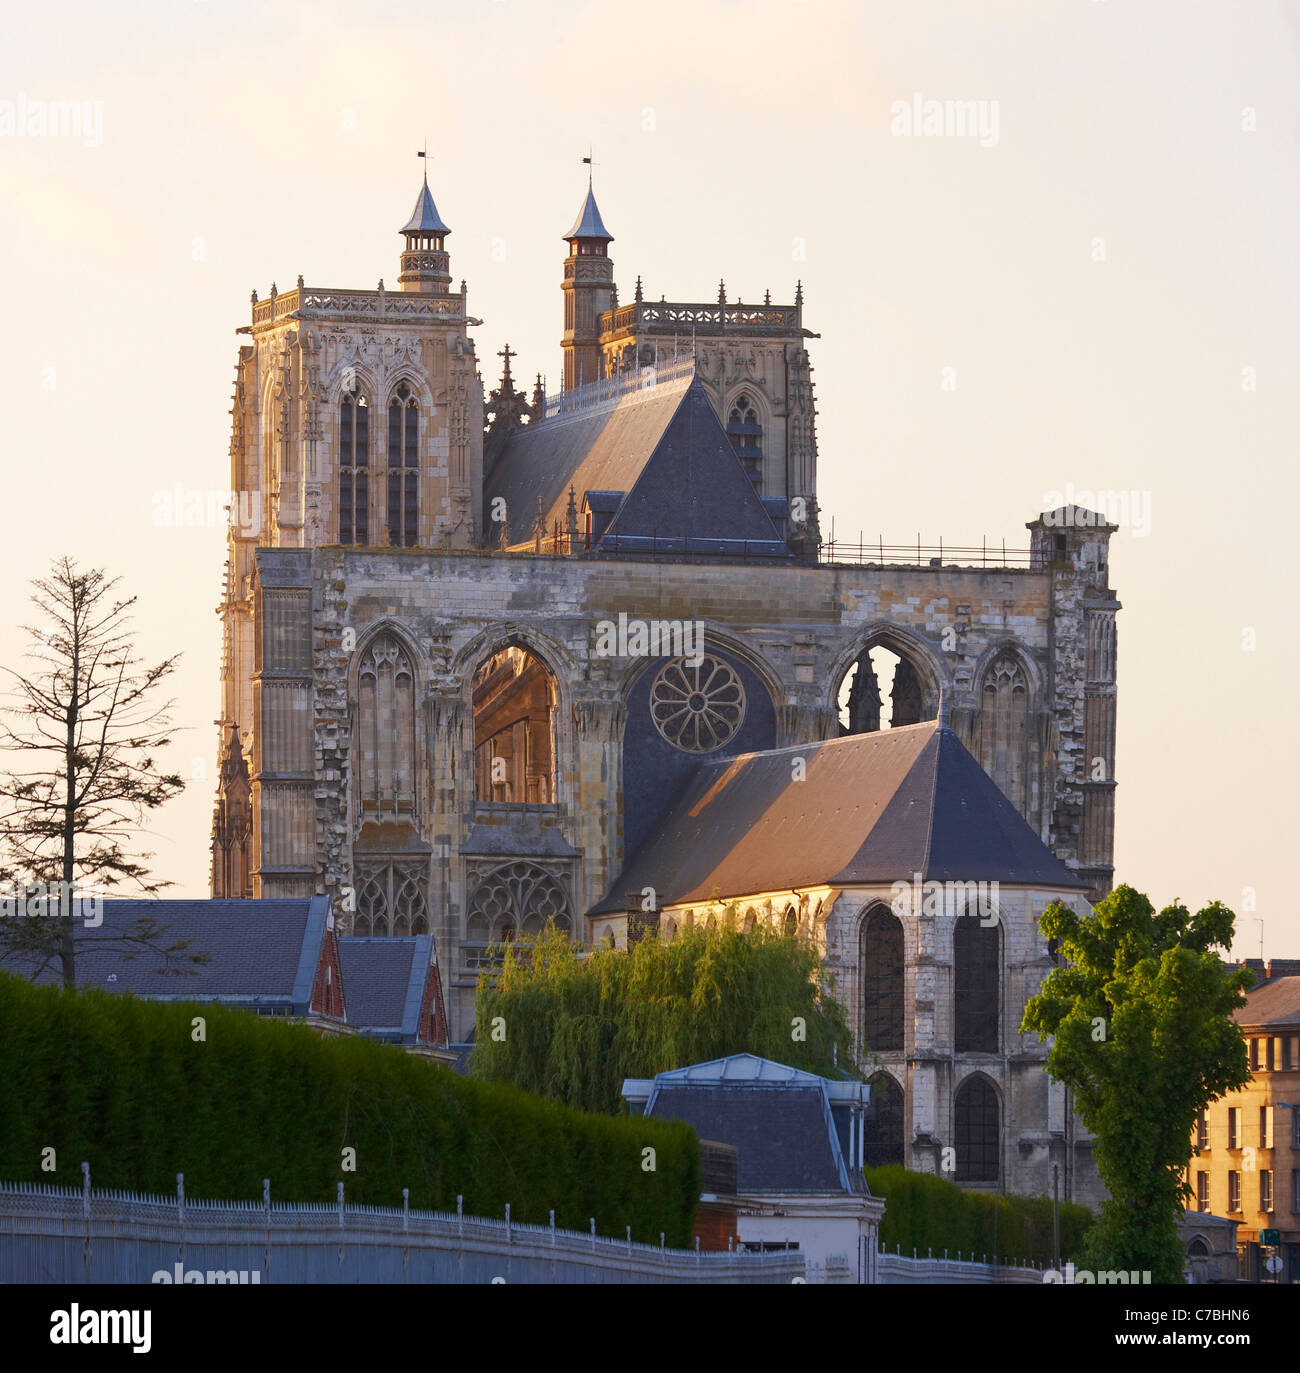 Vista sul lato sudorientale della Cattedrale Saint-Vulfran, Abbeville Dept. Somme Picardia, Francia, Europa Foto Stock